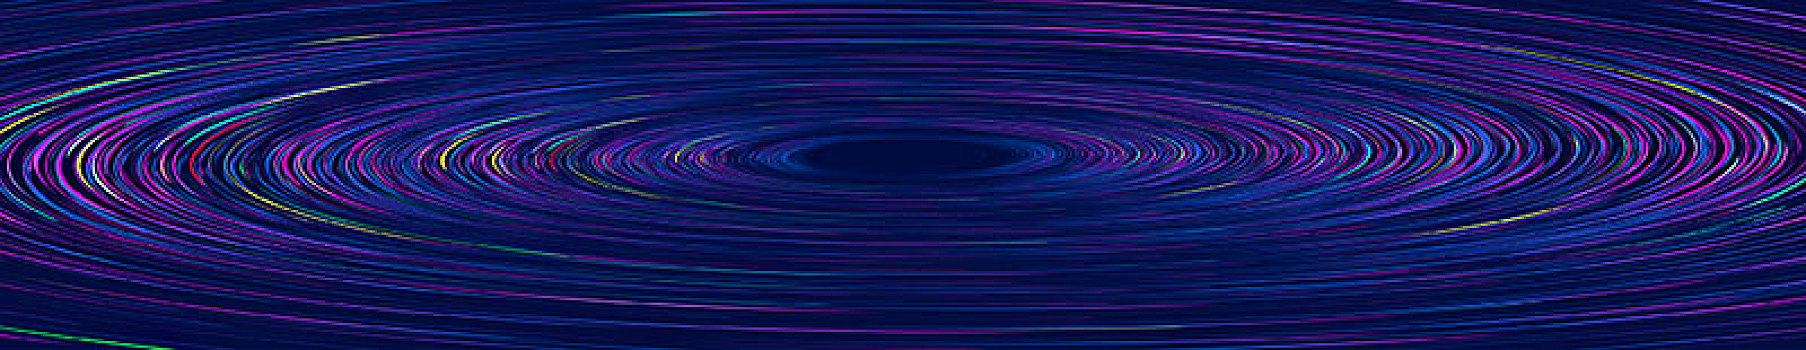 彩色线条组成发光的漩涡背景图